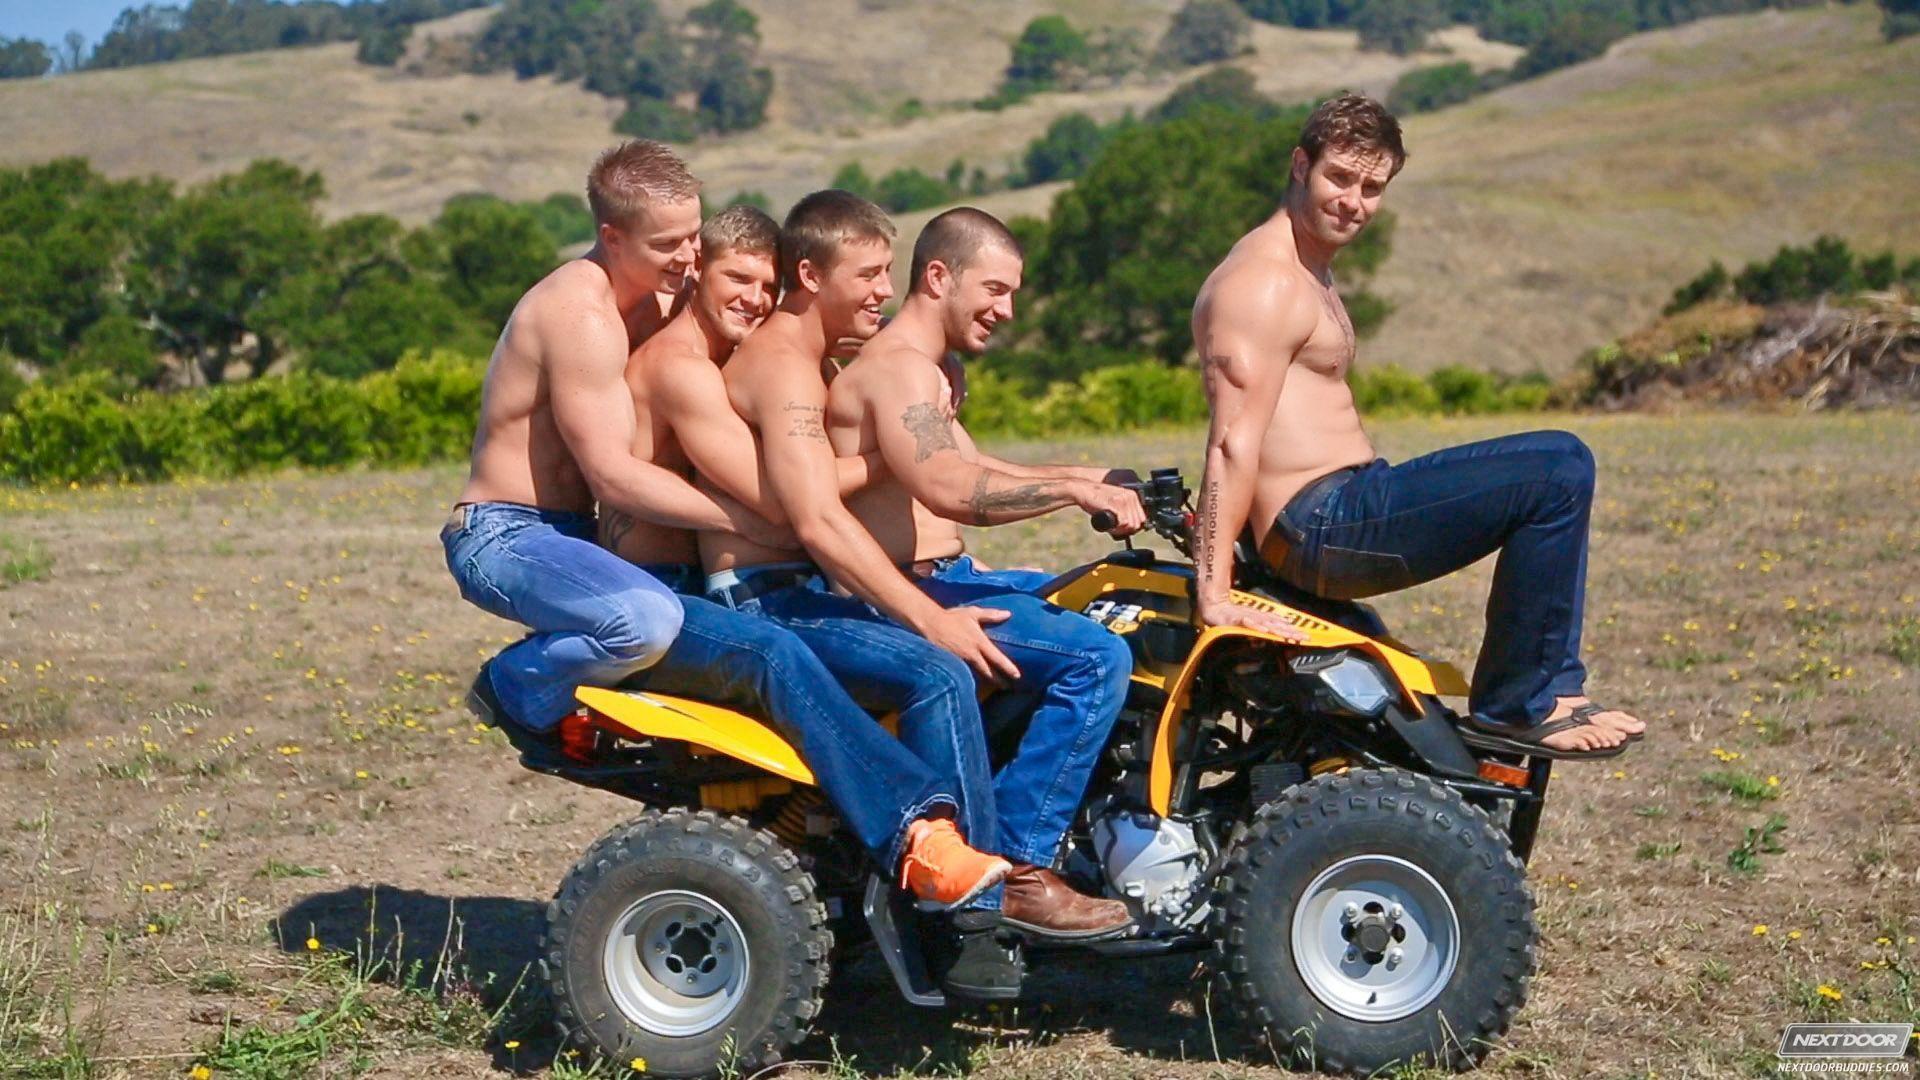 Farm orgy